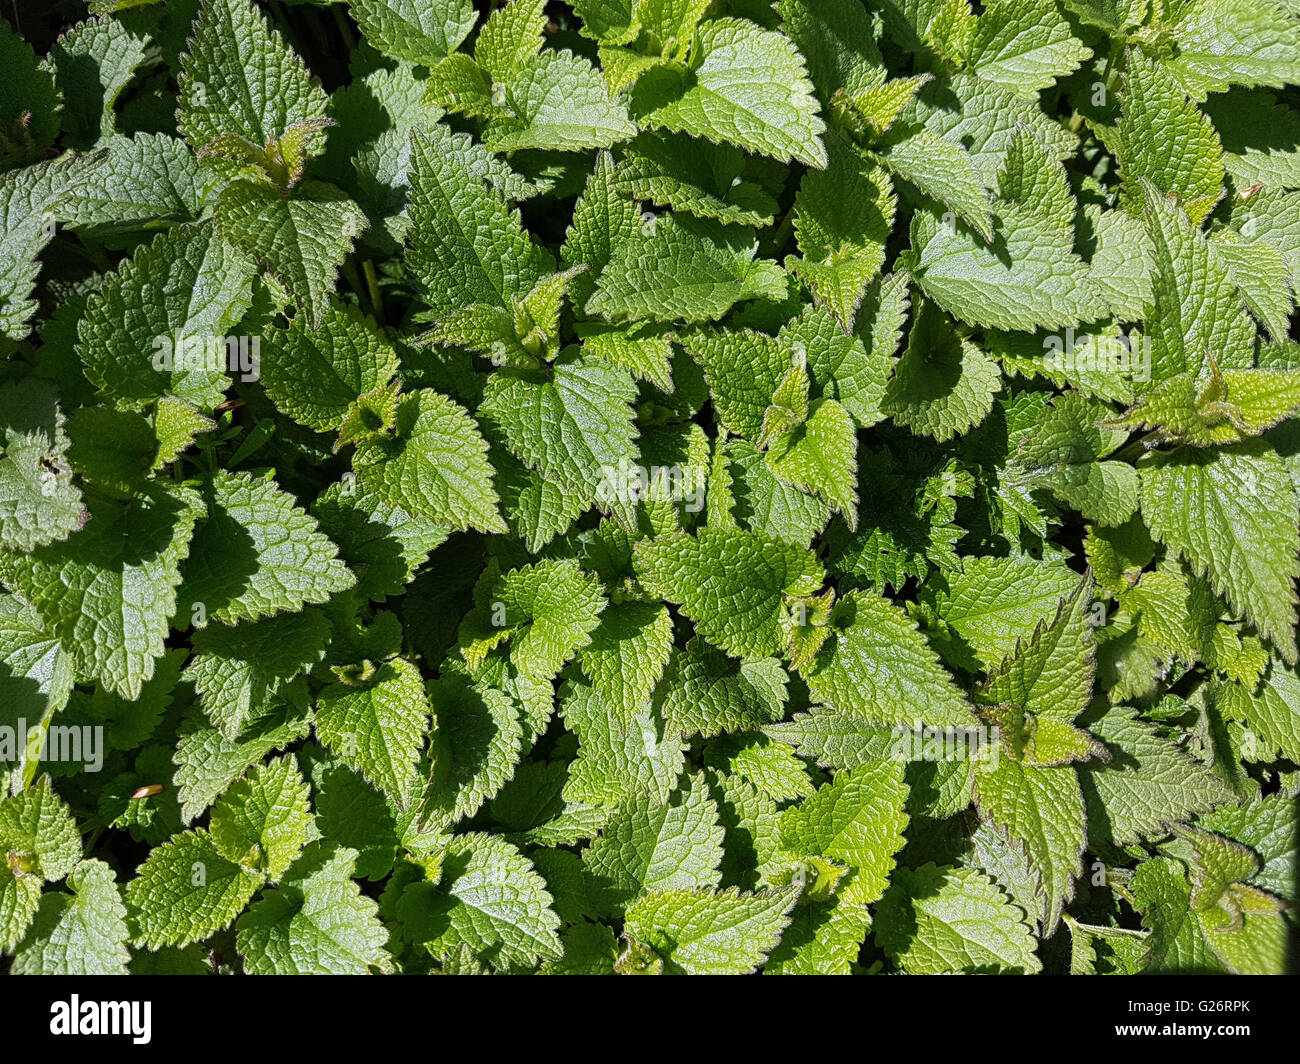 Weisse Taubnessel, ist eine Wildpflanze und Heilpflanze Foto Stock